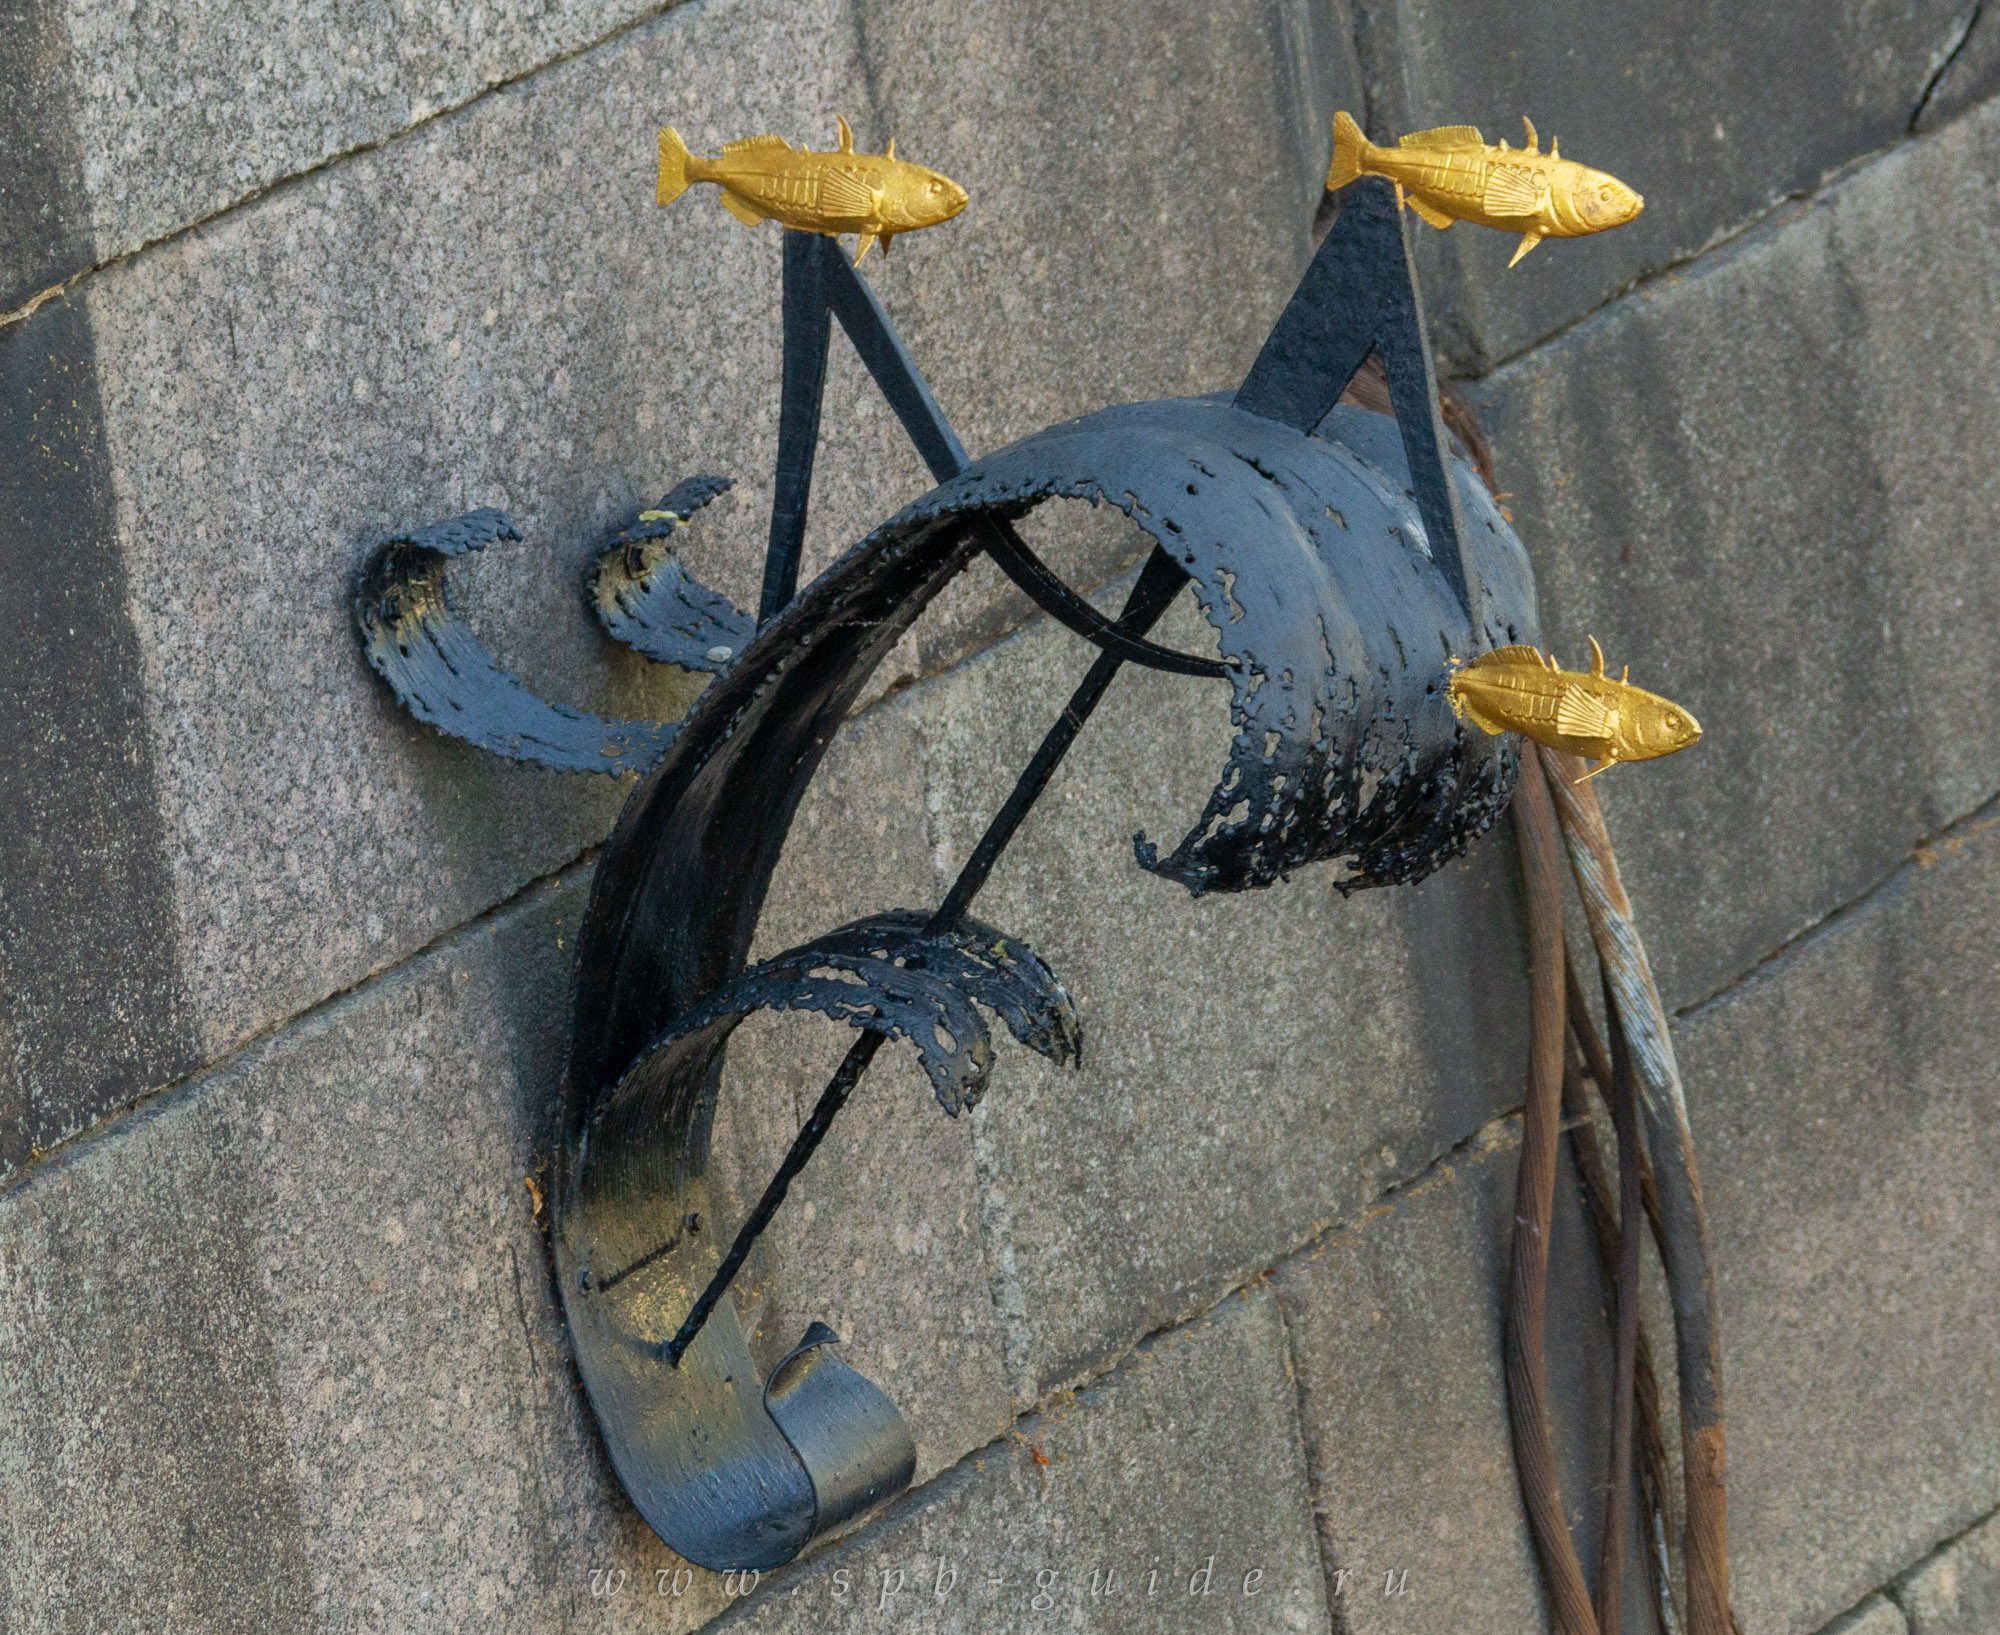 Памятник корюшке в санкт петербурге